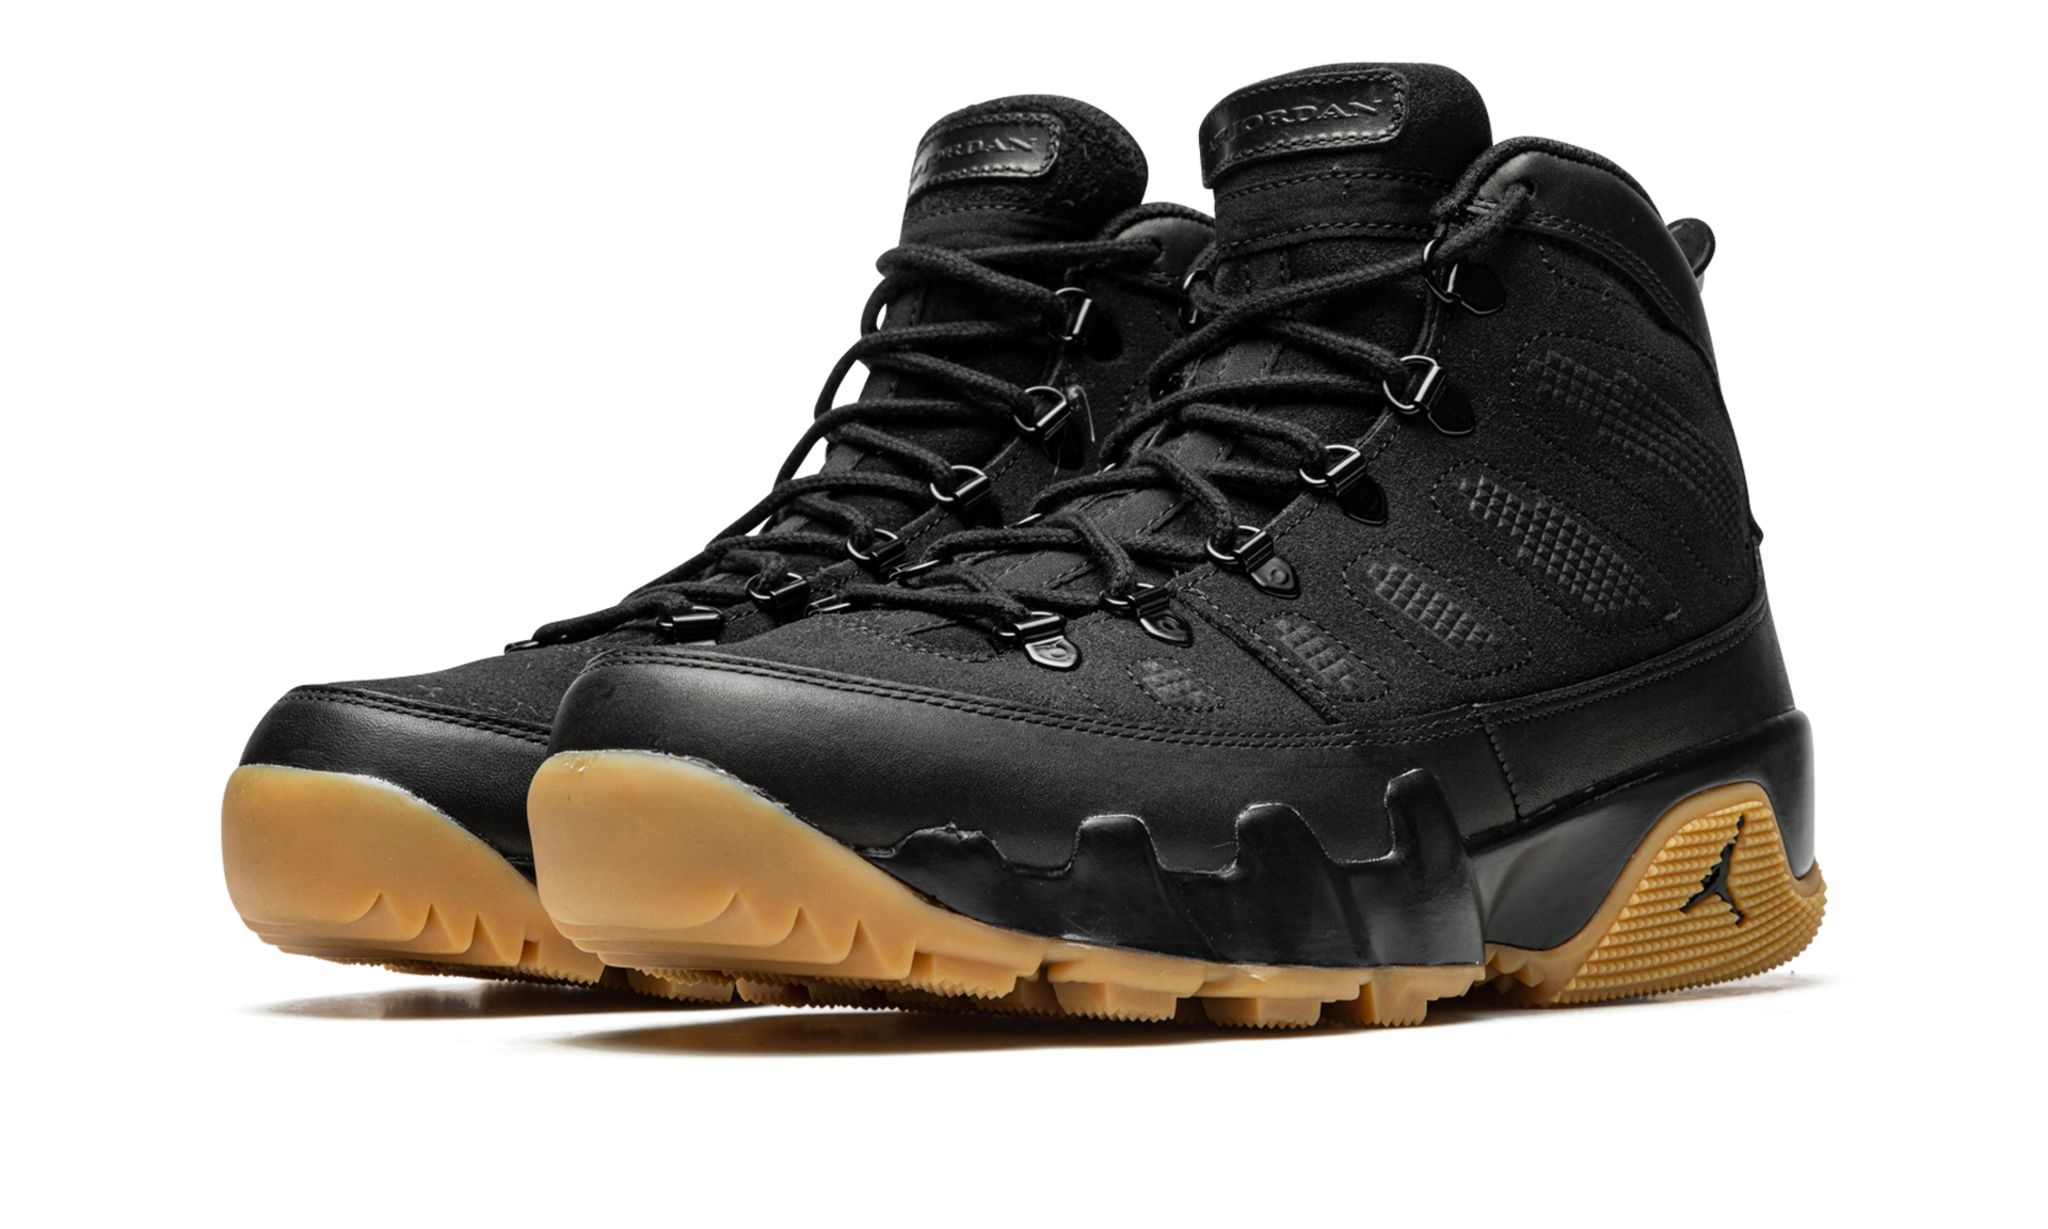 Air Jordan 9 Boot "Black / Gum" - 2